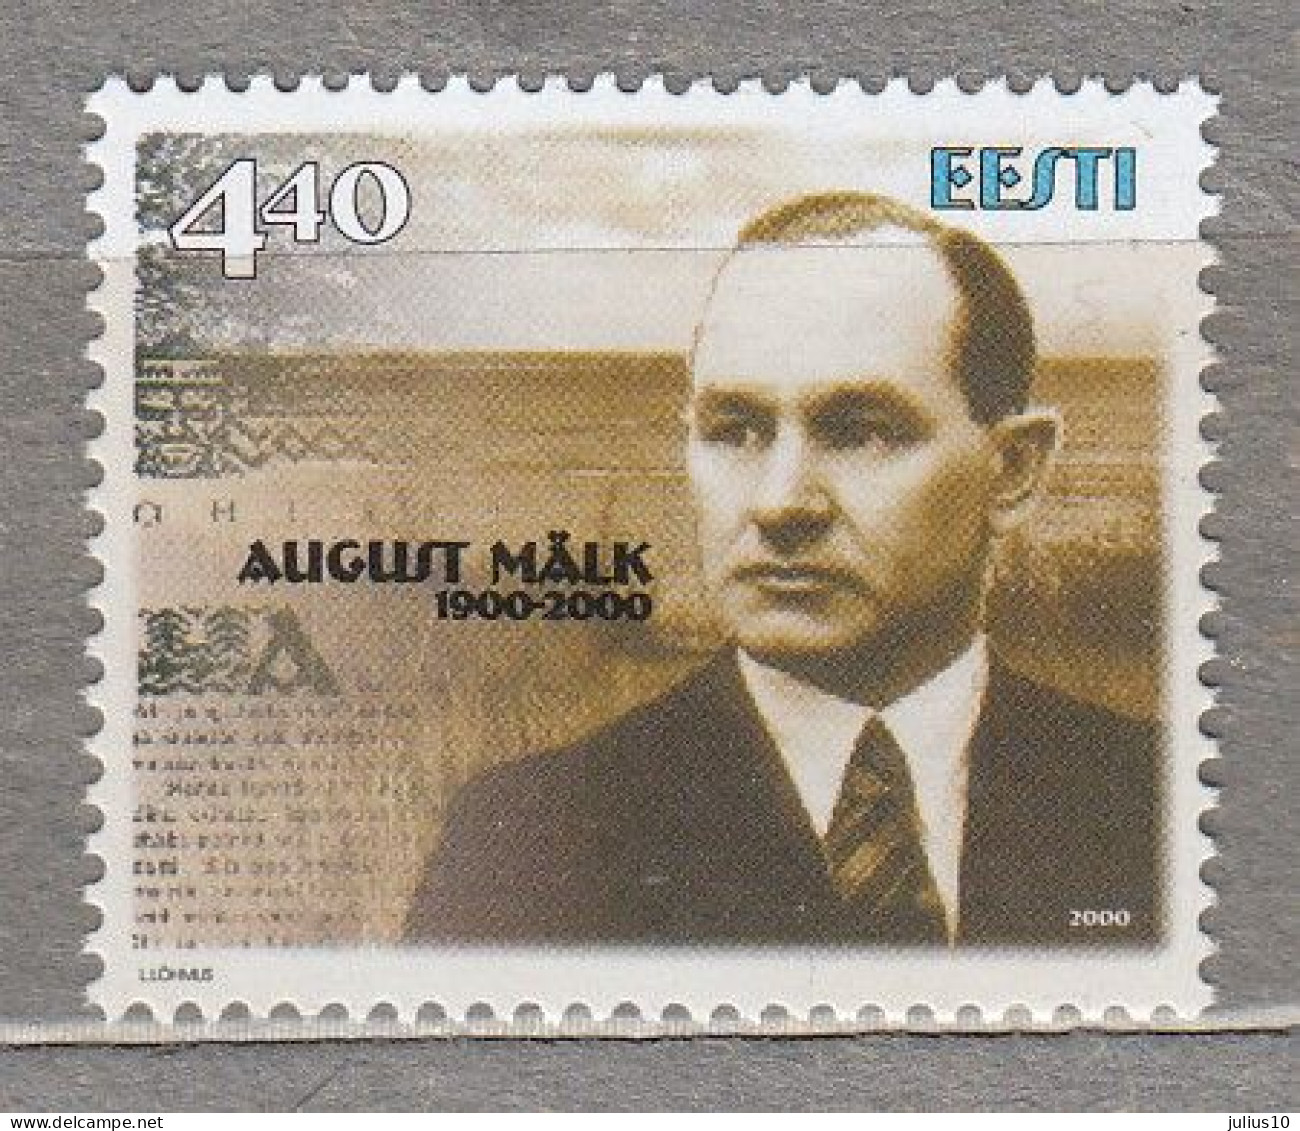 ESTONIA 2000 Famous People A.Malk MNH(**) Mi 380 # Est339 - Estland